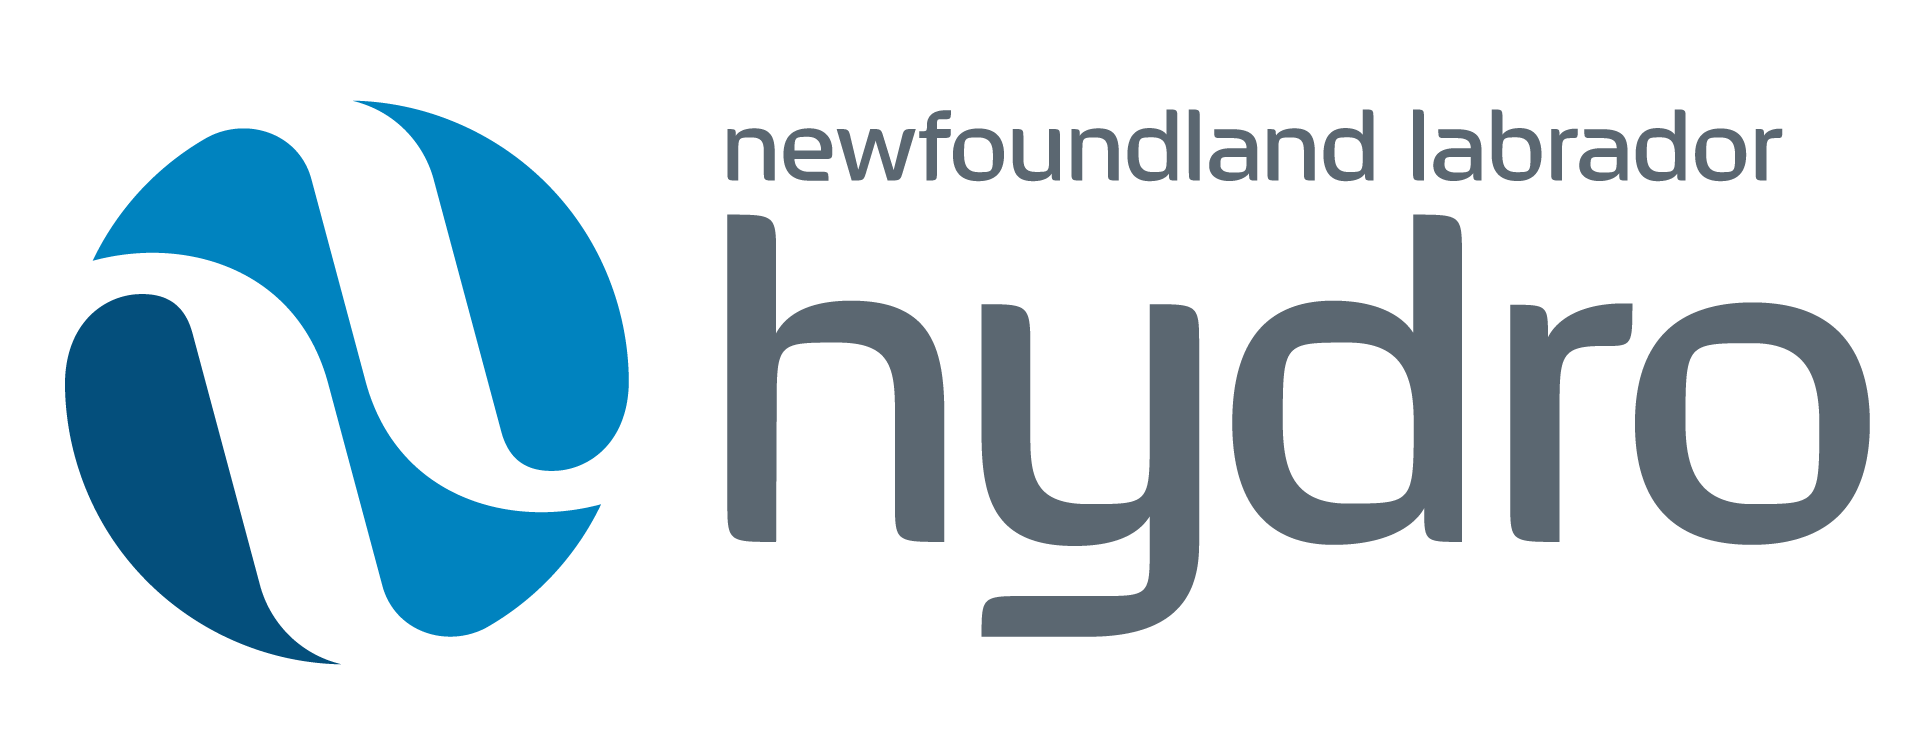 NL hydro no tag colour